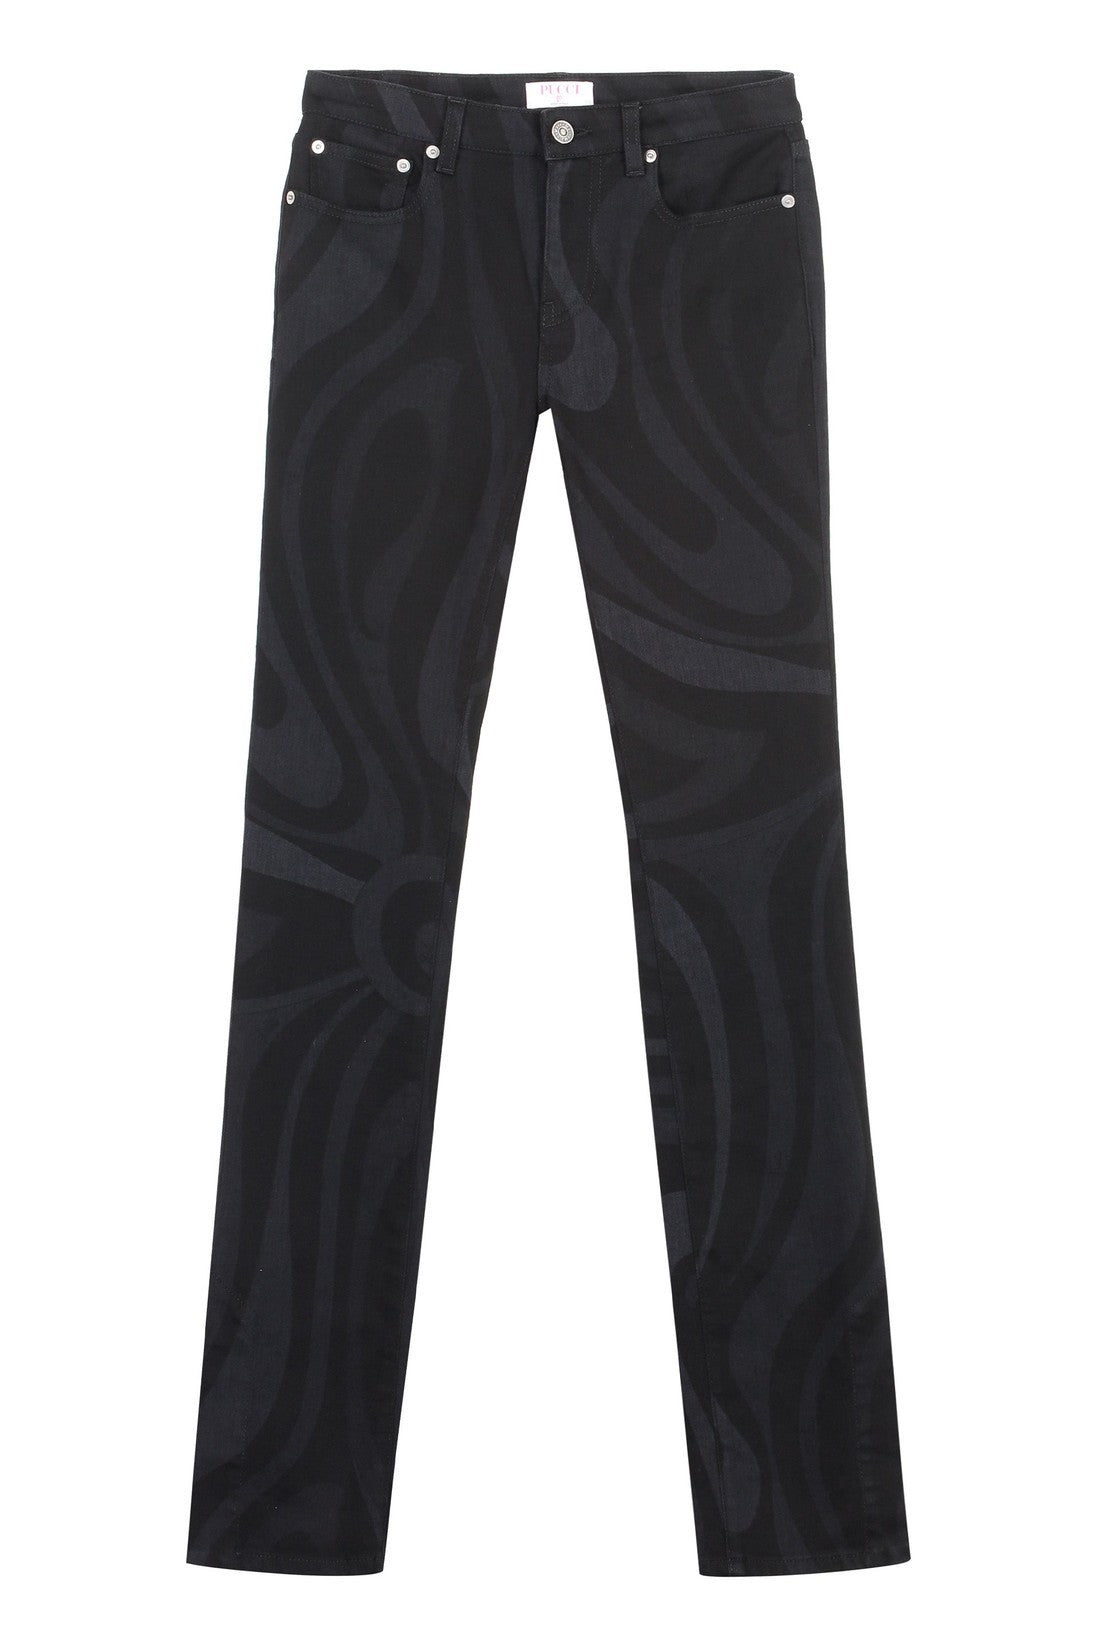 Emilio Pucci-OUTLET-SALE-5-pocket straight-leg jeans-ARCHIVIST